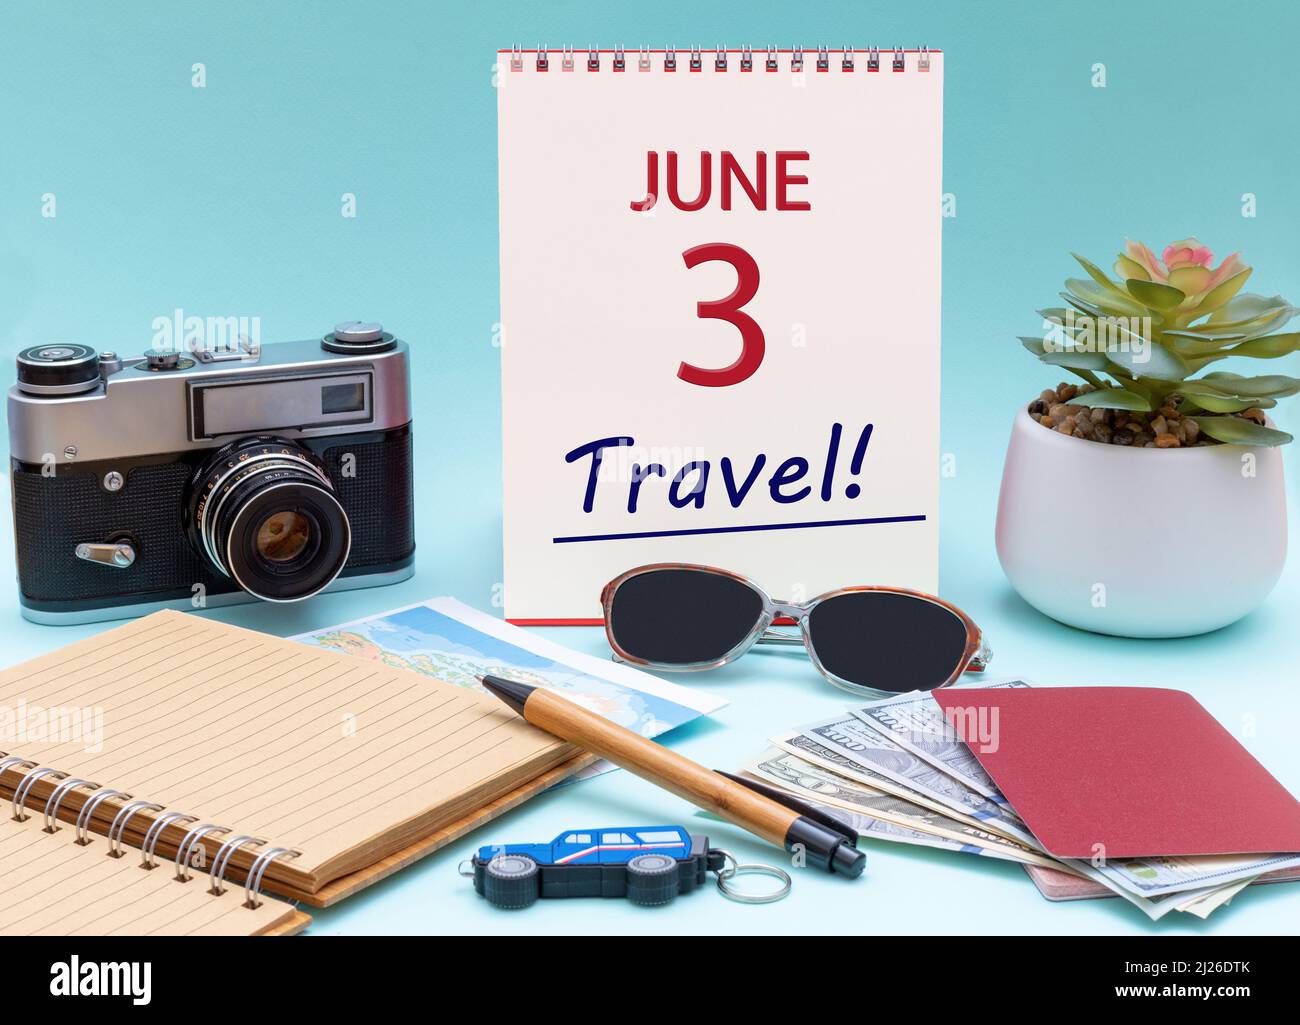 3rd jour de juin. Planification de voyage, voyage de vacances - Calendrier avec la date 3 juin lunettes bloc-notes stylo appareil photo passeports en espèces. Mois d'été, jour du vous Banque D'Images